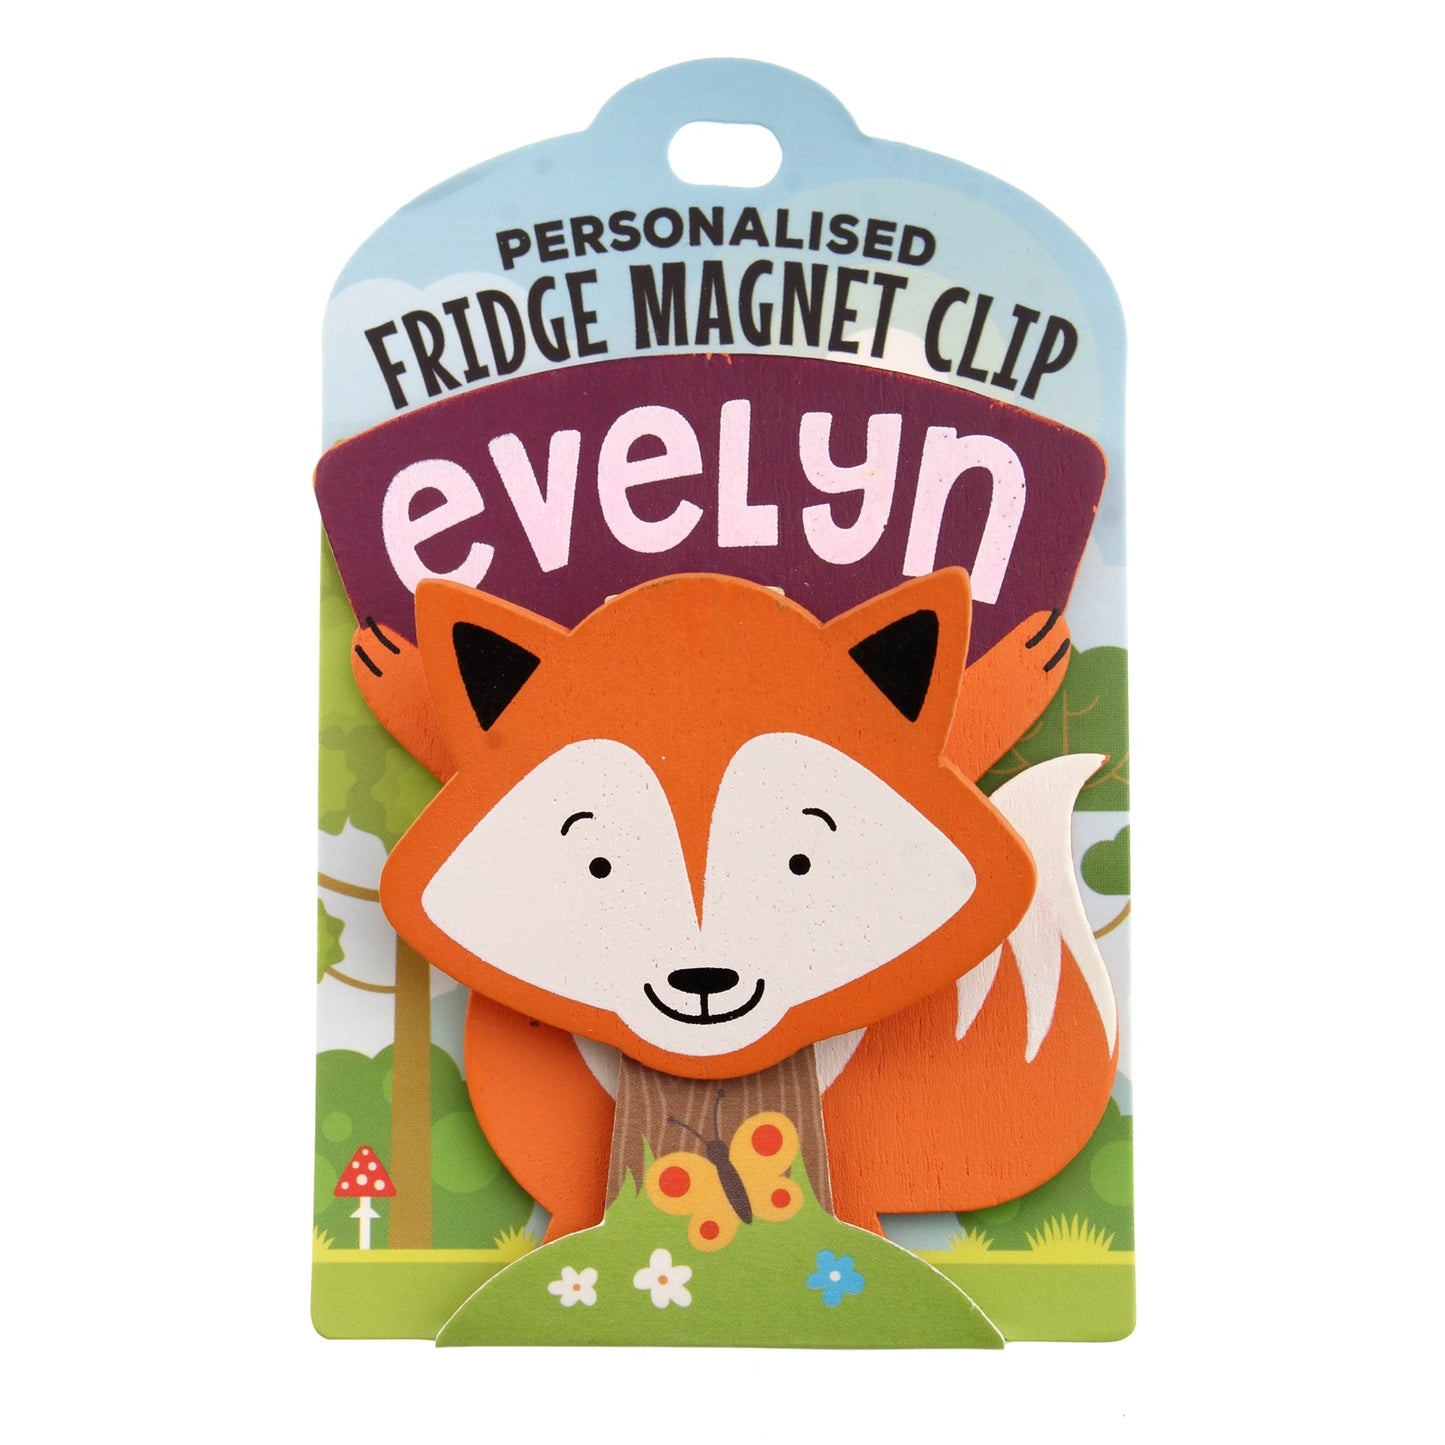 Fridge Magnet Clip Evelyn